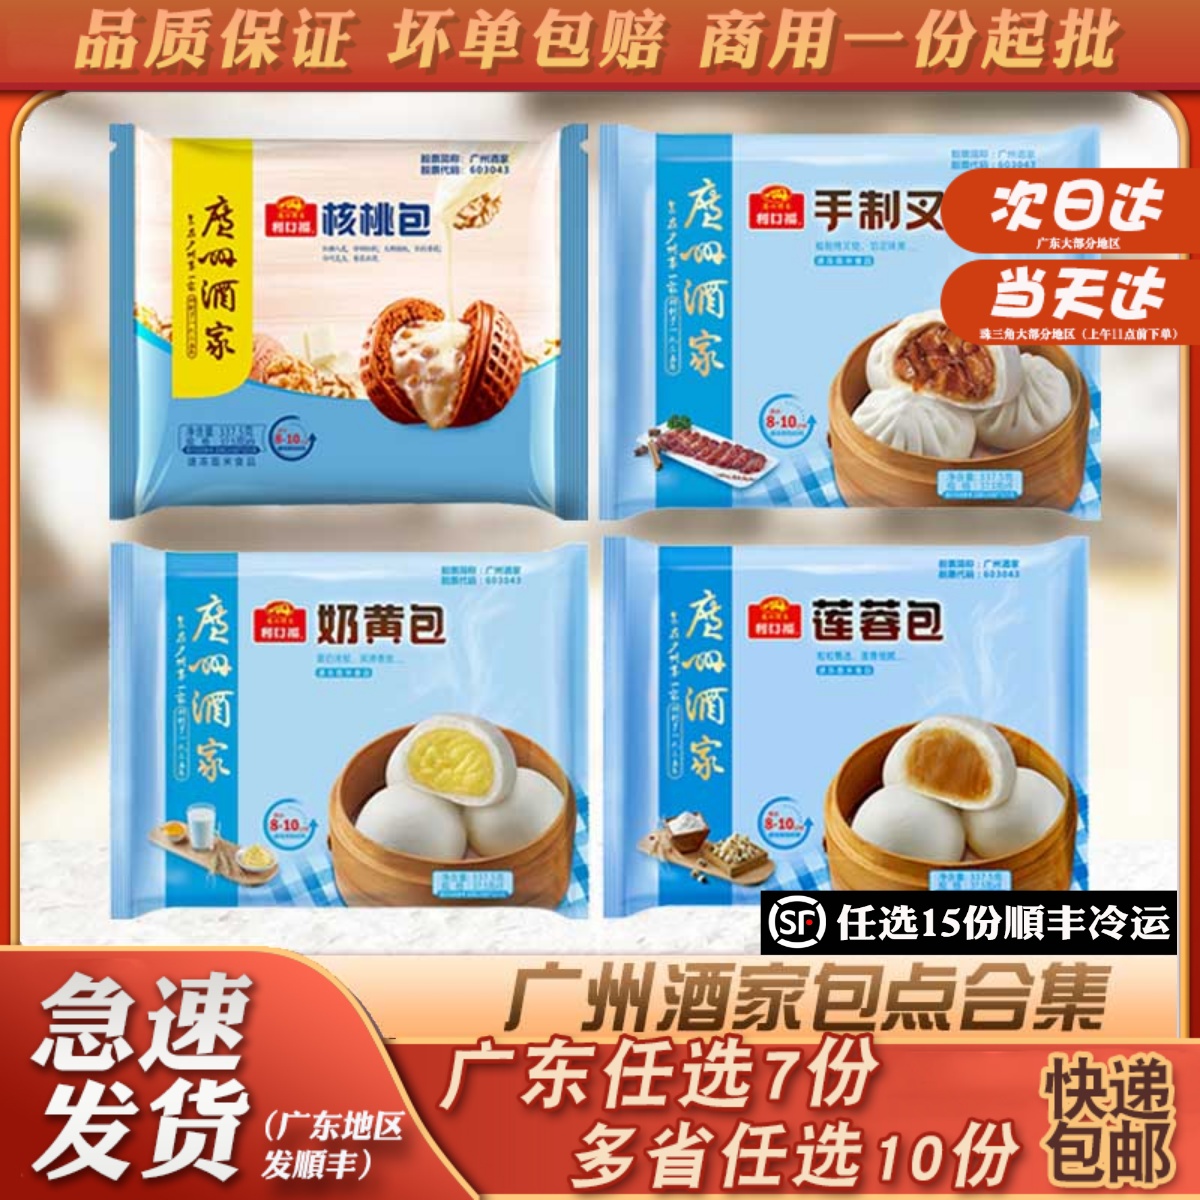 广州酒家利口福核桃包流沙包馒头叉烧包冷冻早茶儿童包子早餐食品